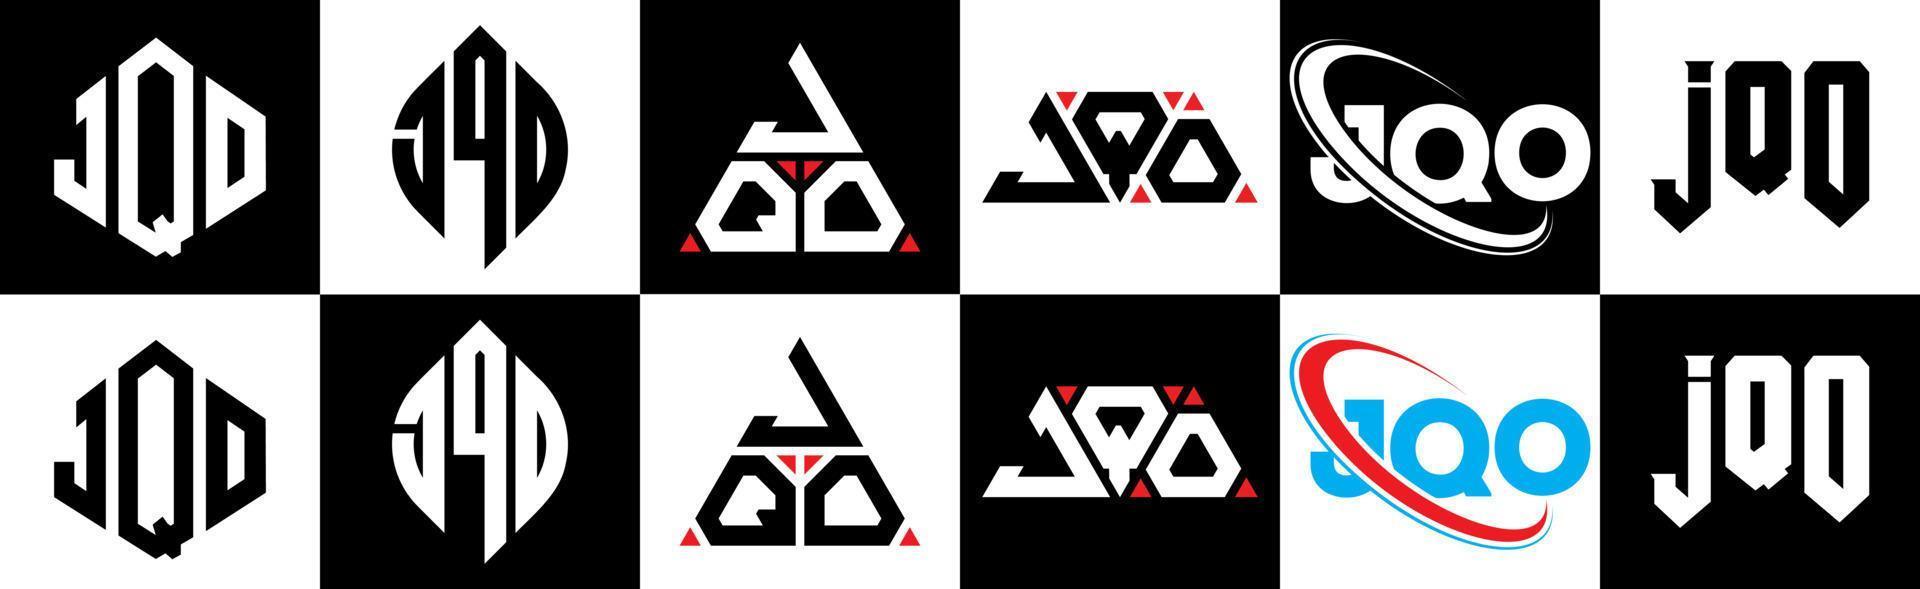 jqo-Buchstaben-Logo-Design in sechs Stilen. jqo Polygon, Kreis, Dreieck, Sechseck, flacher und einfacher Stil mit schwarz-weißem Buchstabenlogo in einer Zeichenfläche. jqo minimalistisches und klassisches Logo vektor